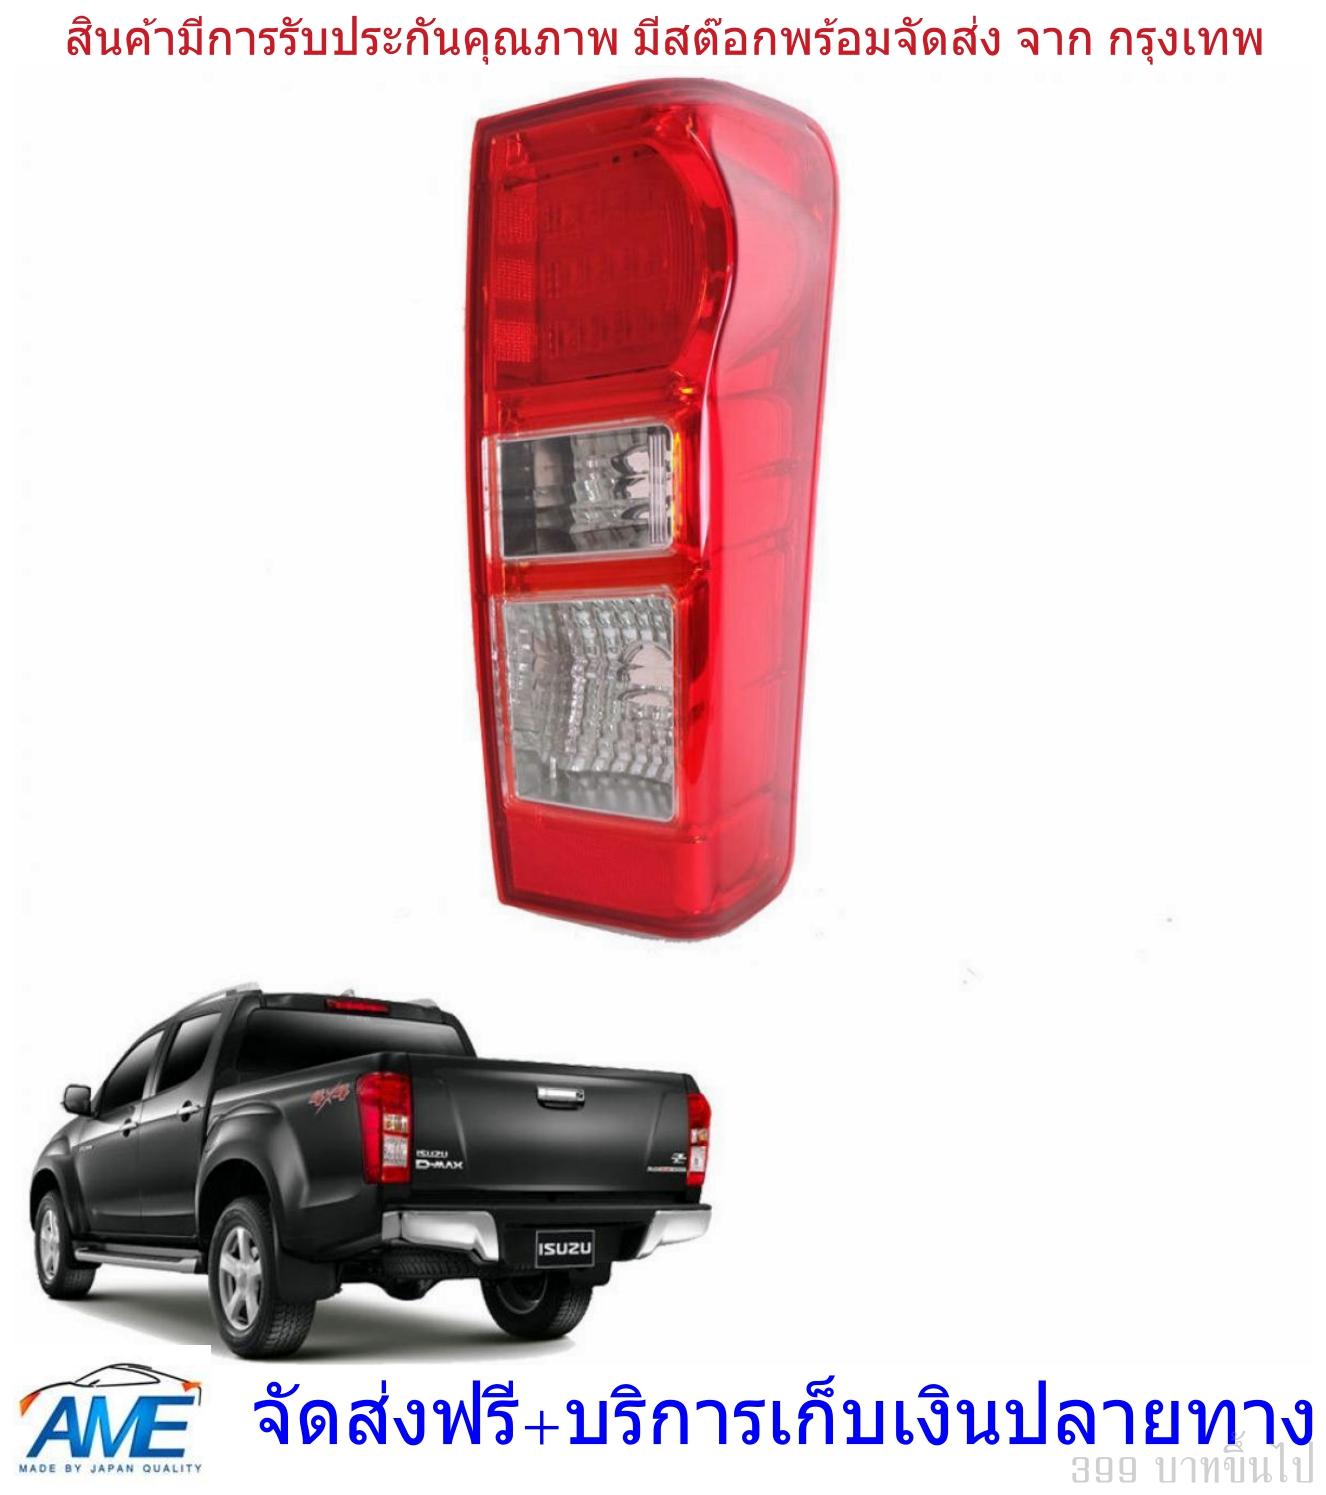 เสื้อไฟท้าย LED สีแดง รุ่น อิซูซุ ดีแม็กซ์ ISUZU D-MAX DMAX ปี 2012 - 2015 ข้างขวา ไม่รวมชุดหลอดไฟ และสายไฟ